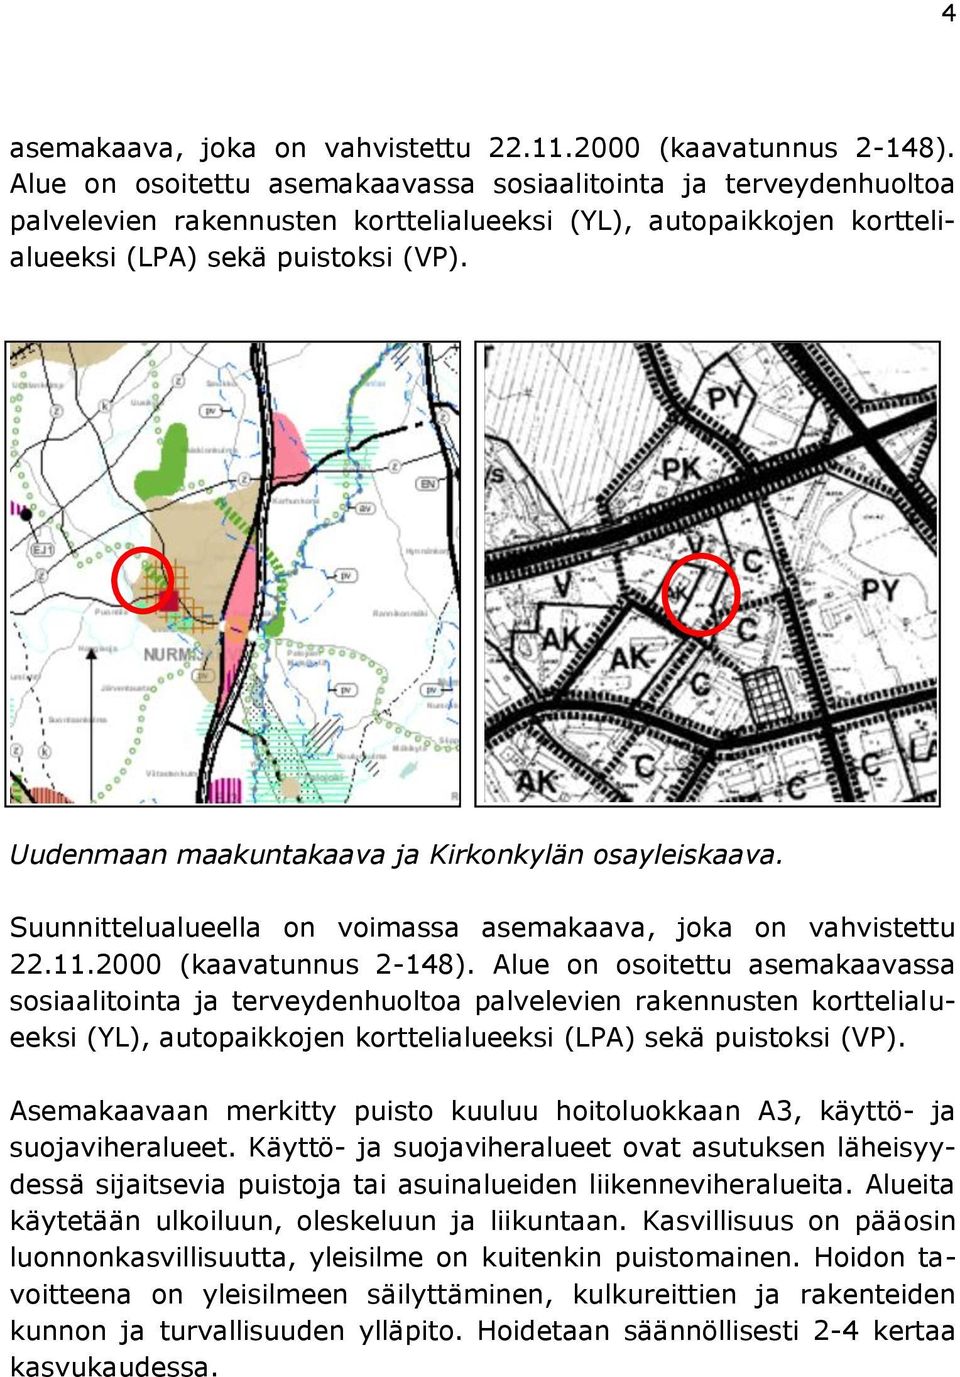 Uudenmaan maakuntakaava ja Kirkonkylän osayleiskaava. Suunnittelualueella on voimassa asemakaava, joka on vahvistettu 22.11.2000 (kaavatunnus 2-148).